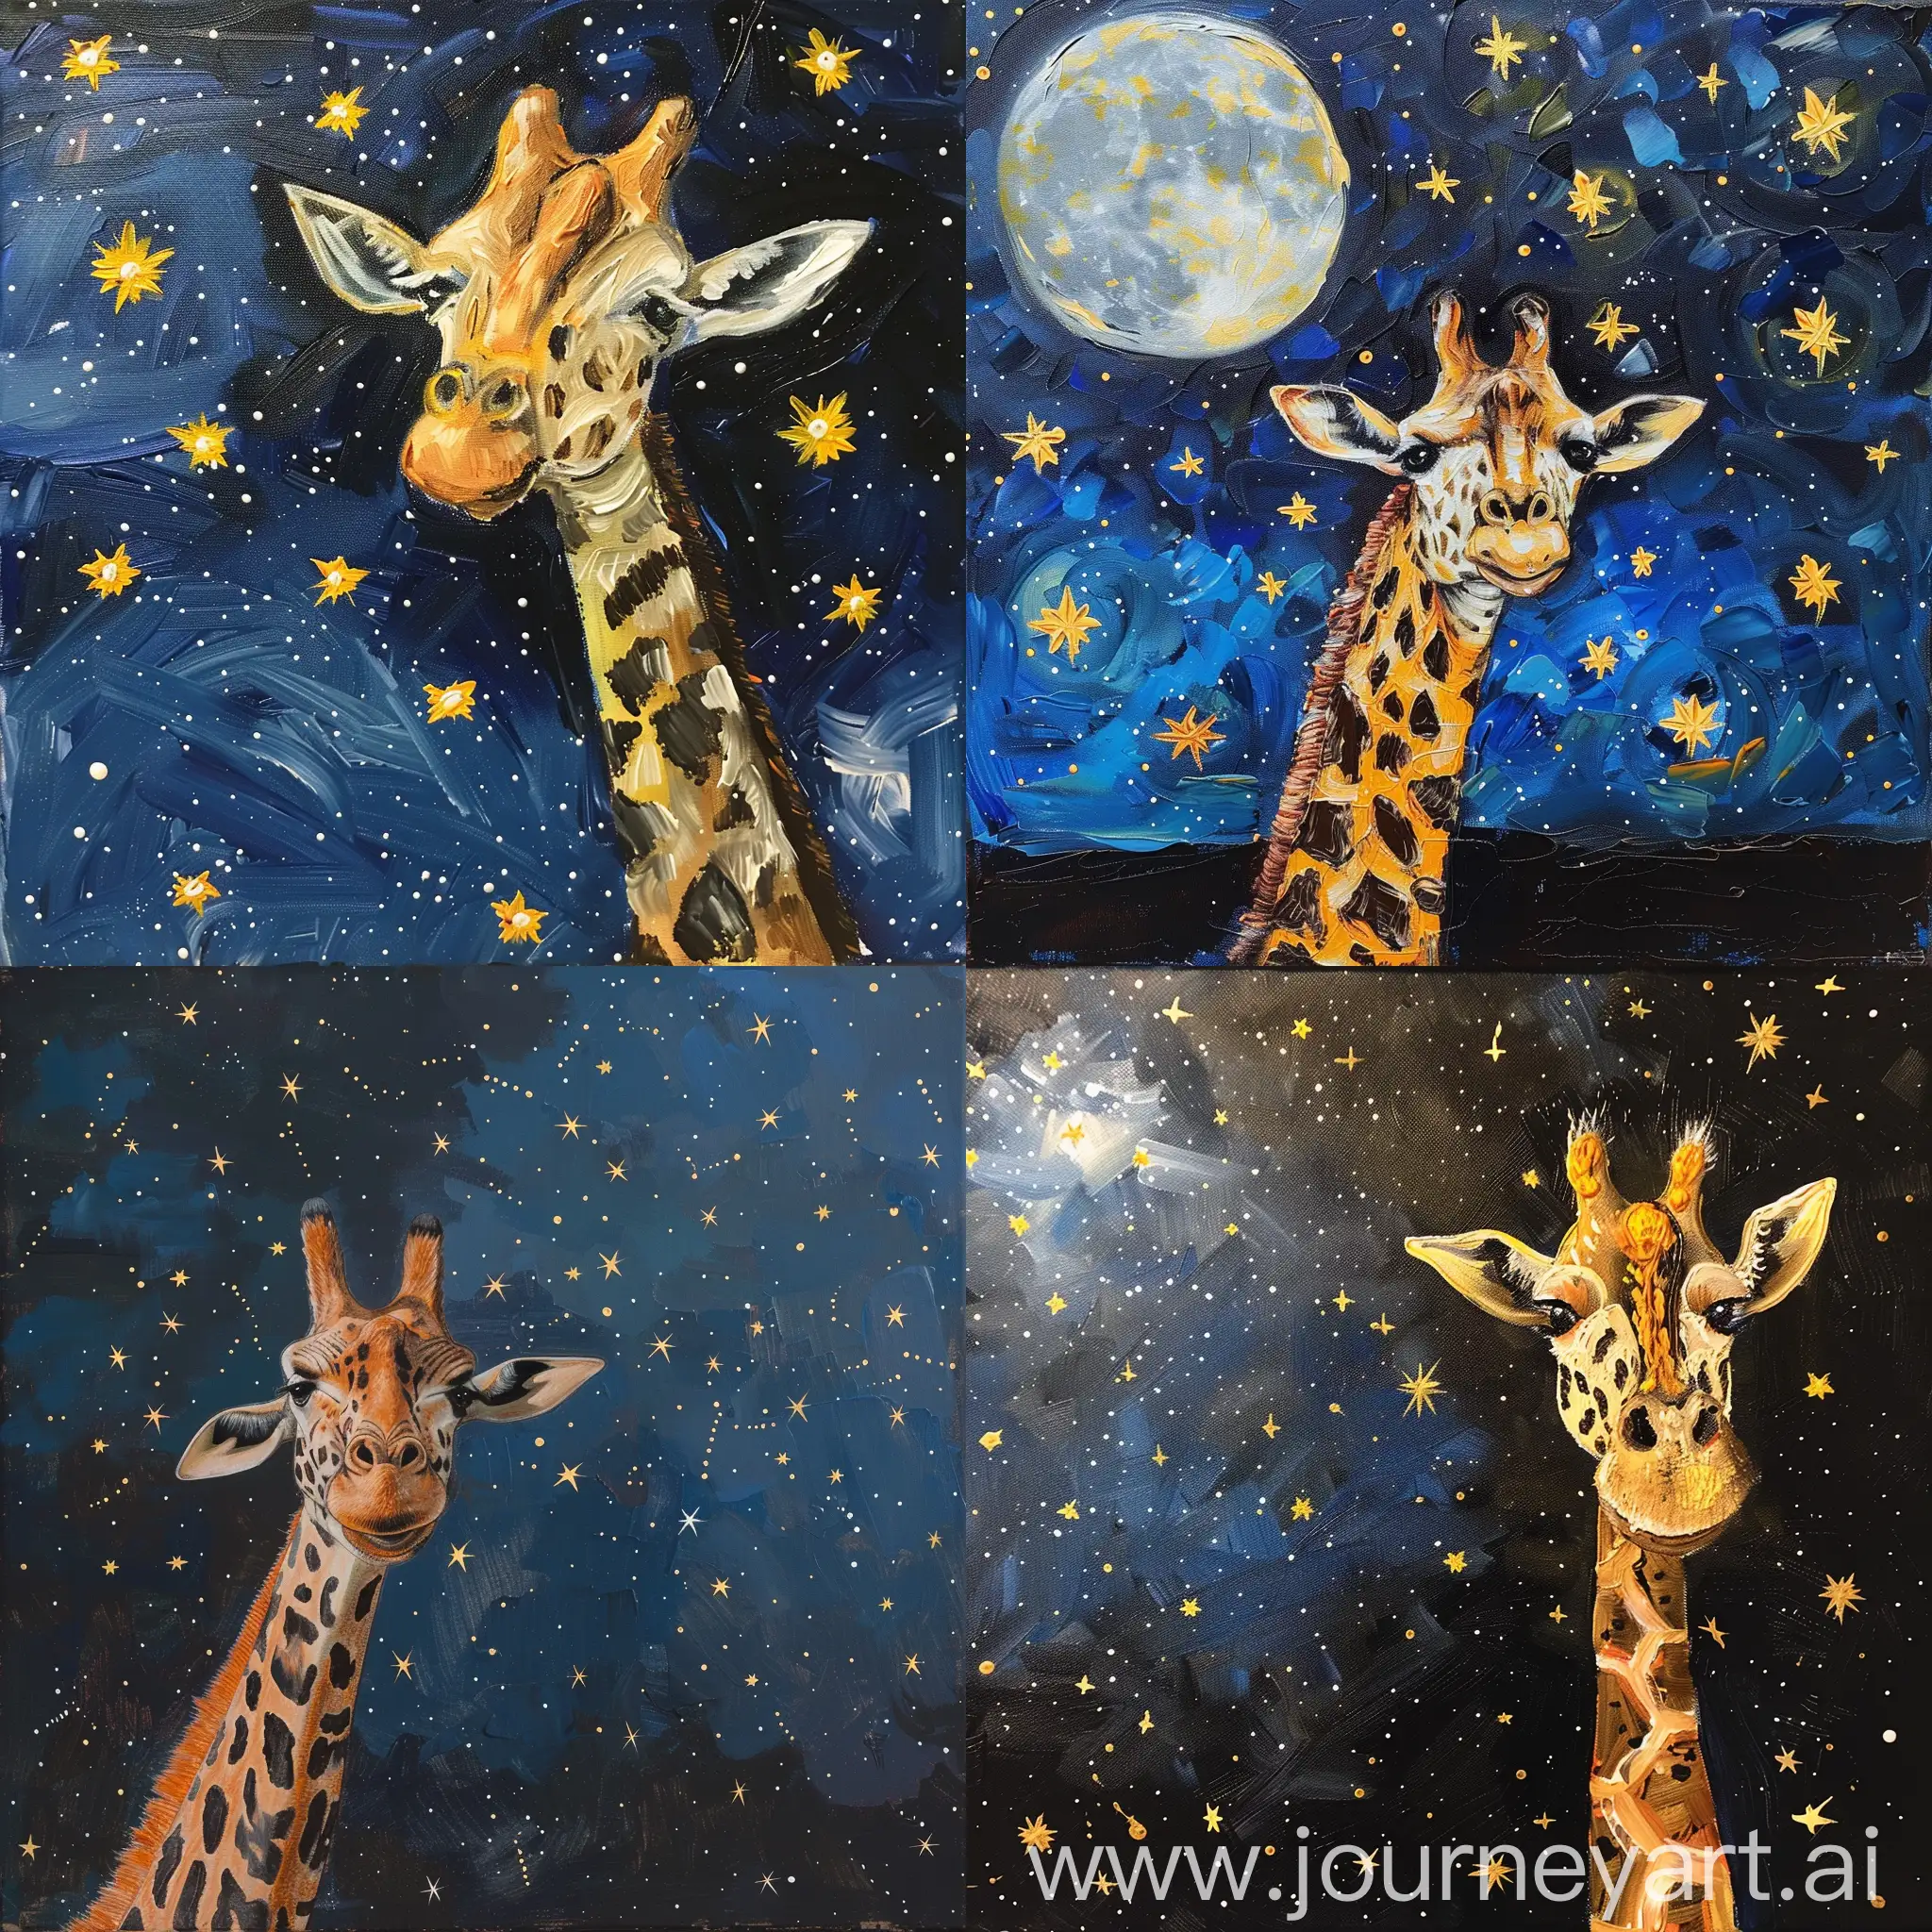 Giraffe painting stars in the night sky